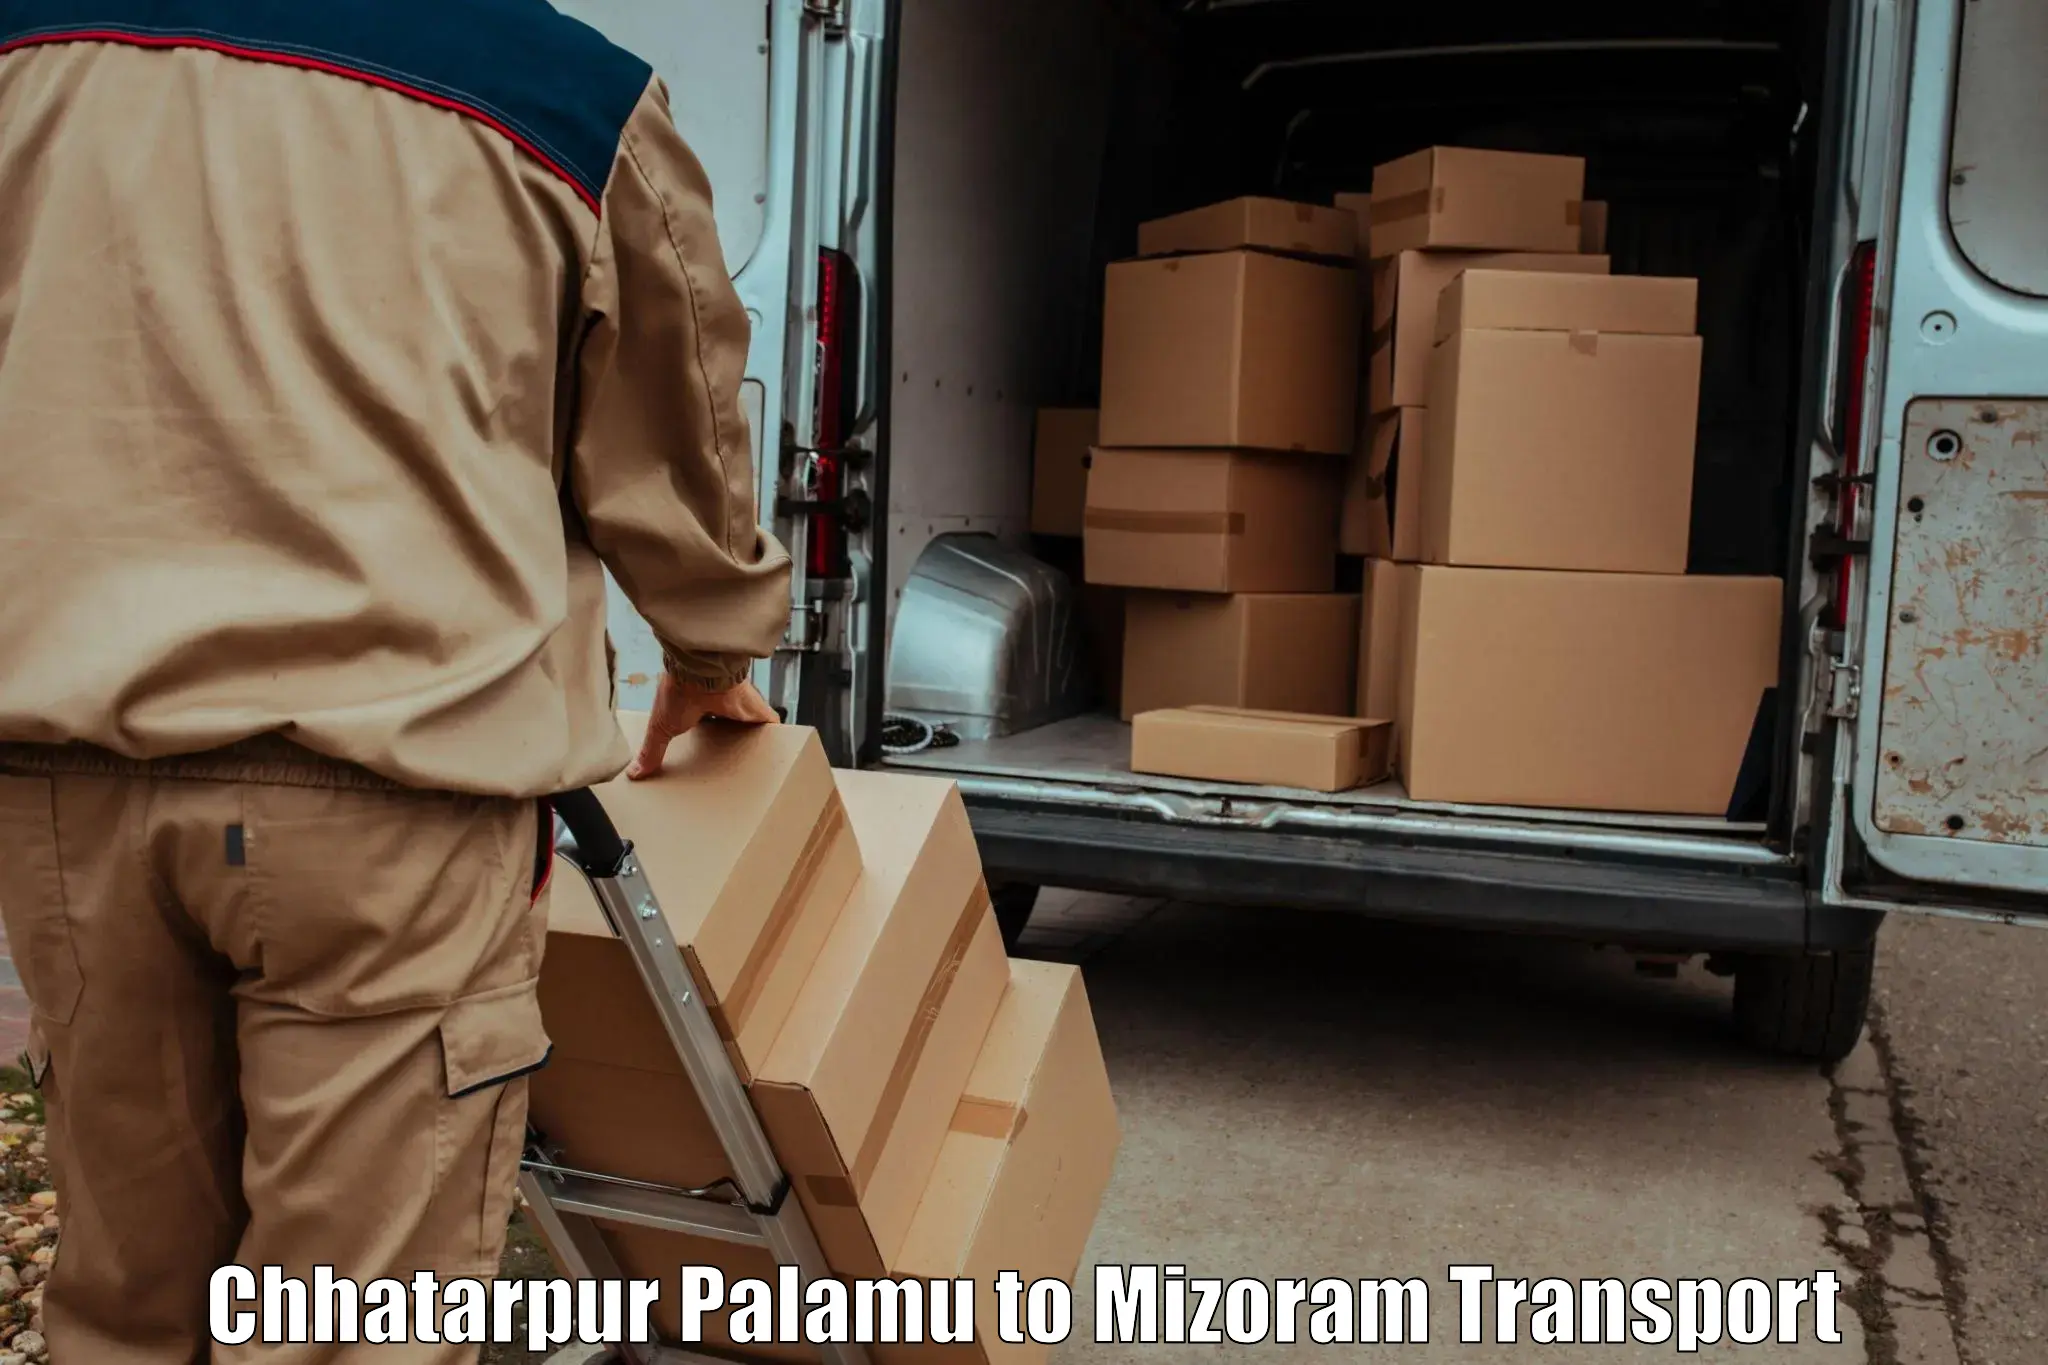 Pick up transport service Chhatarpur Palamu to Champhai